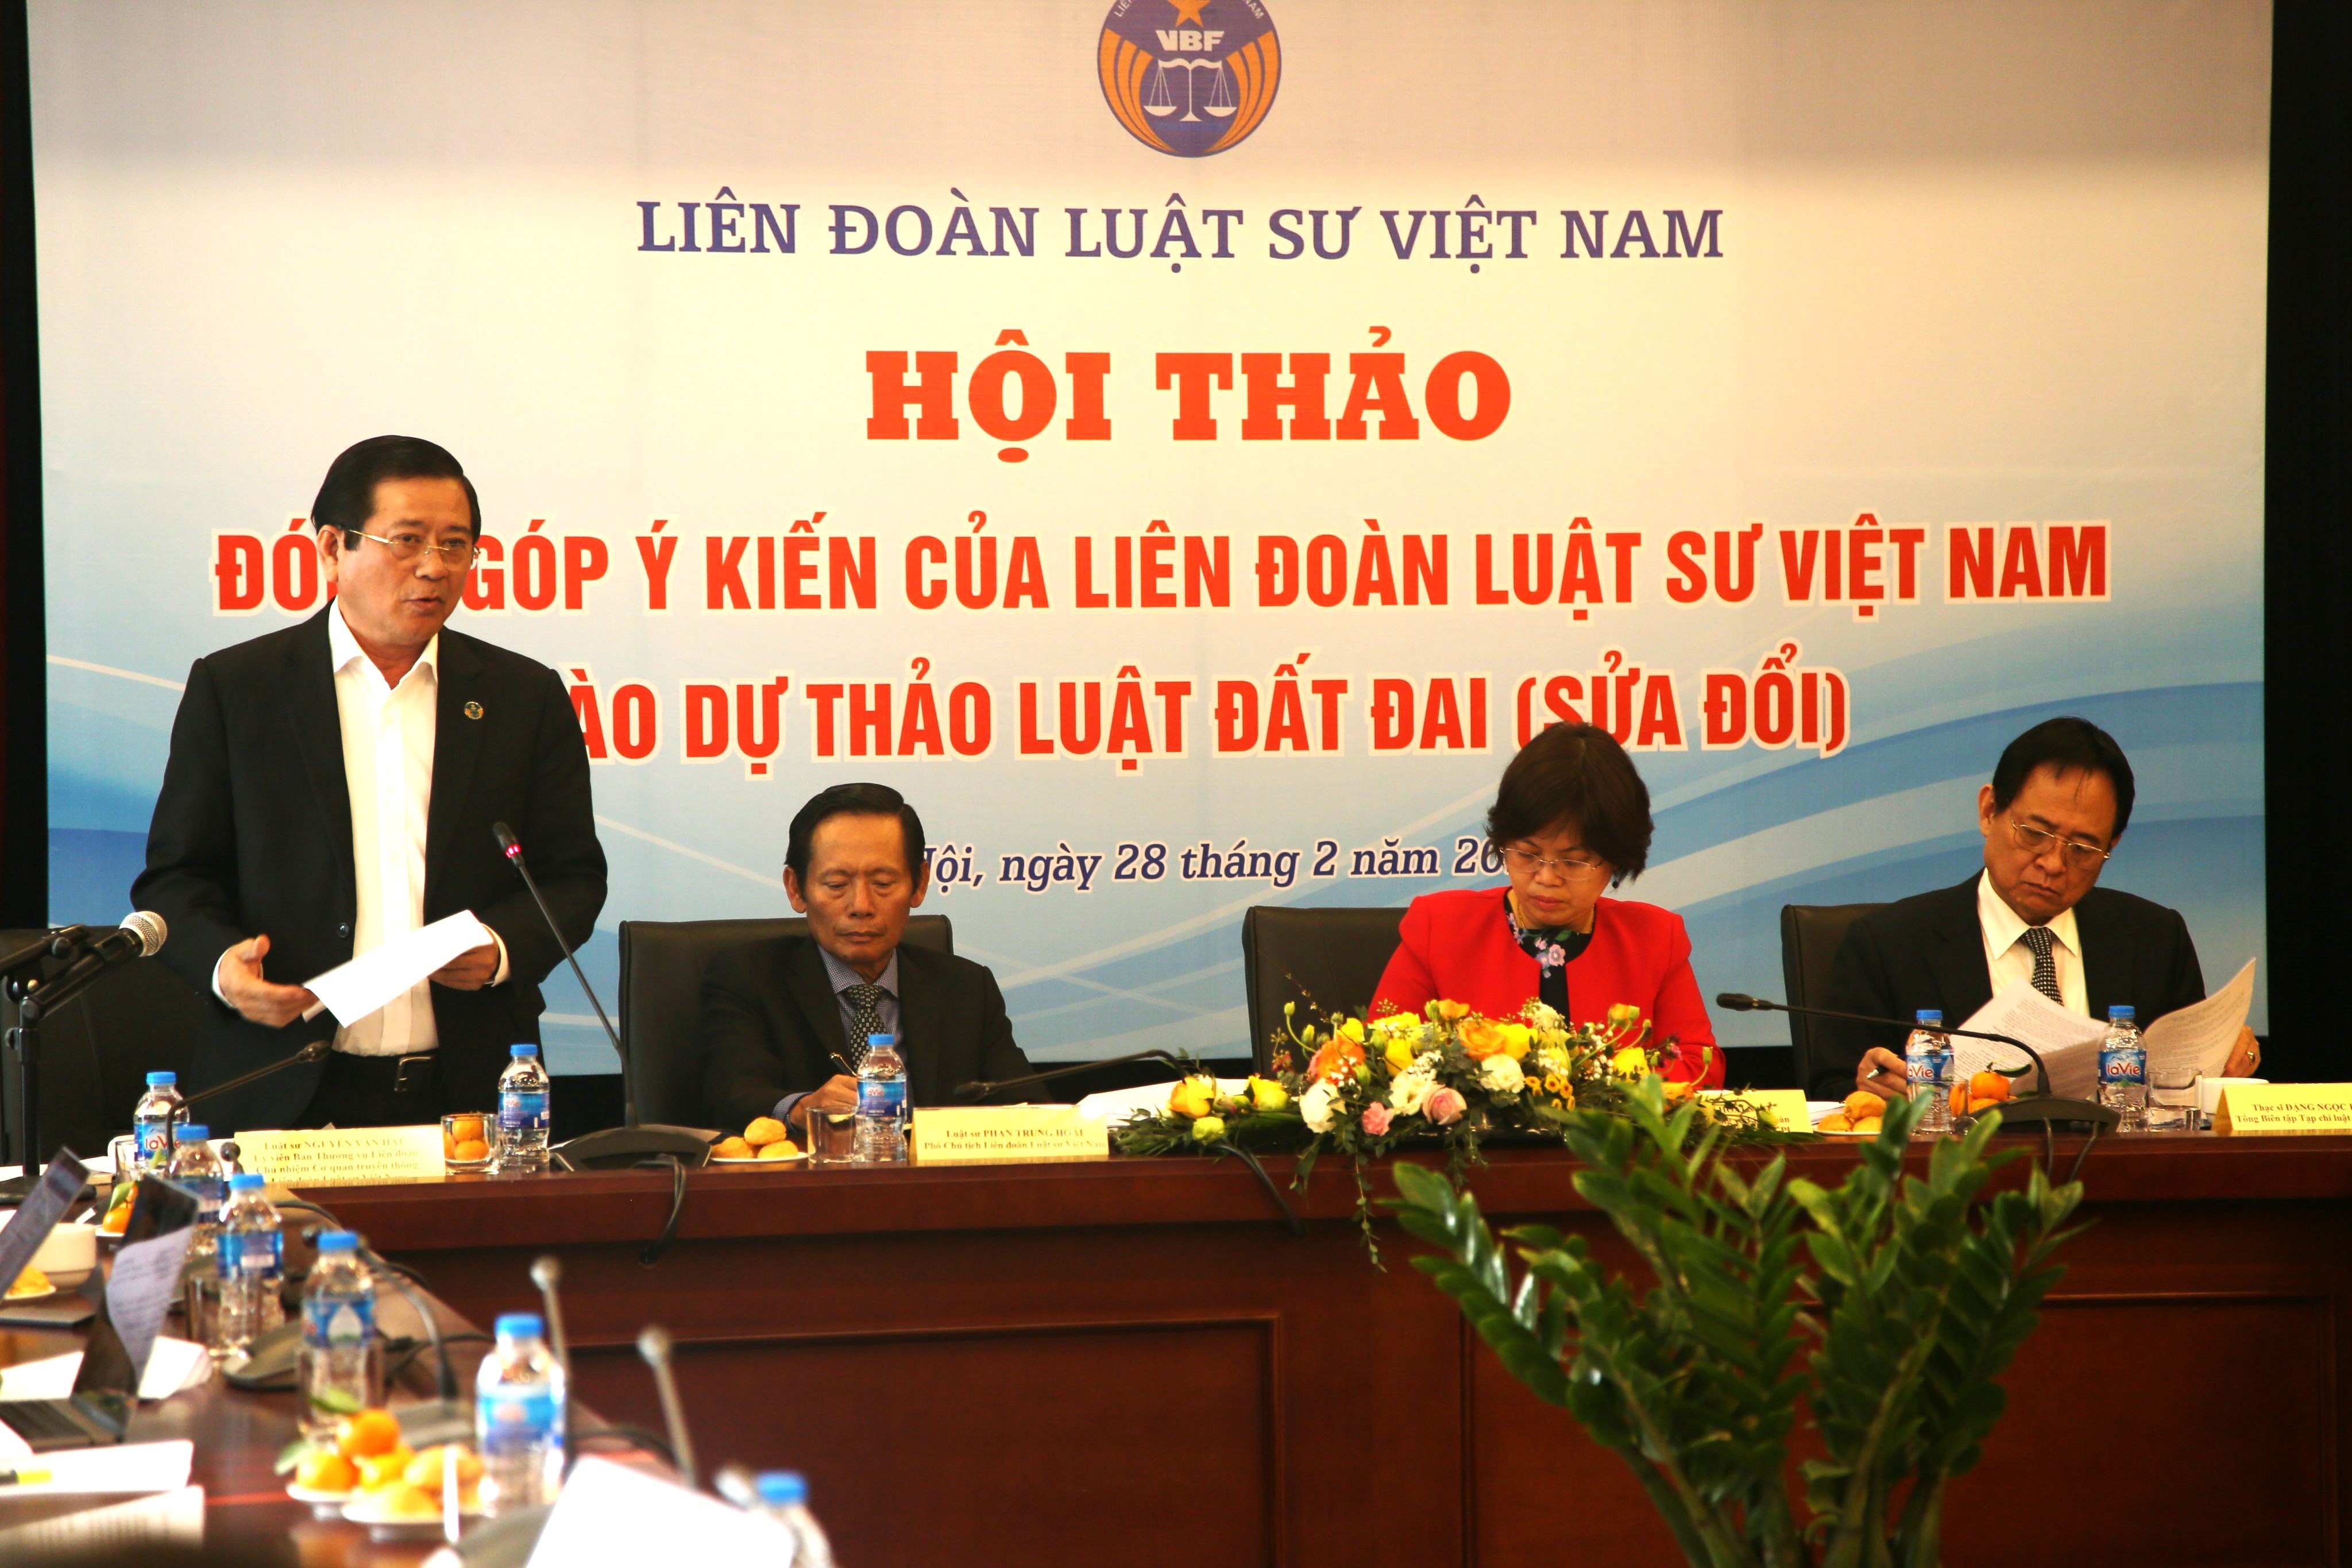 
Luật sư Nguyễn Văn Hậu phát biểu tại Hội thảo
